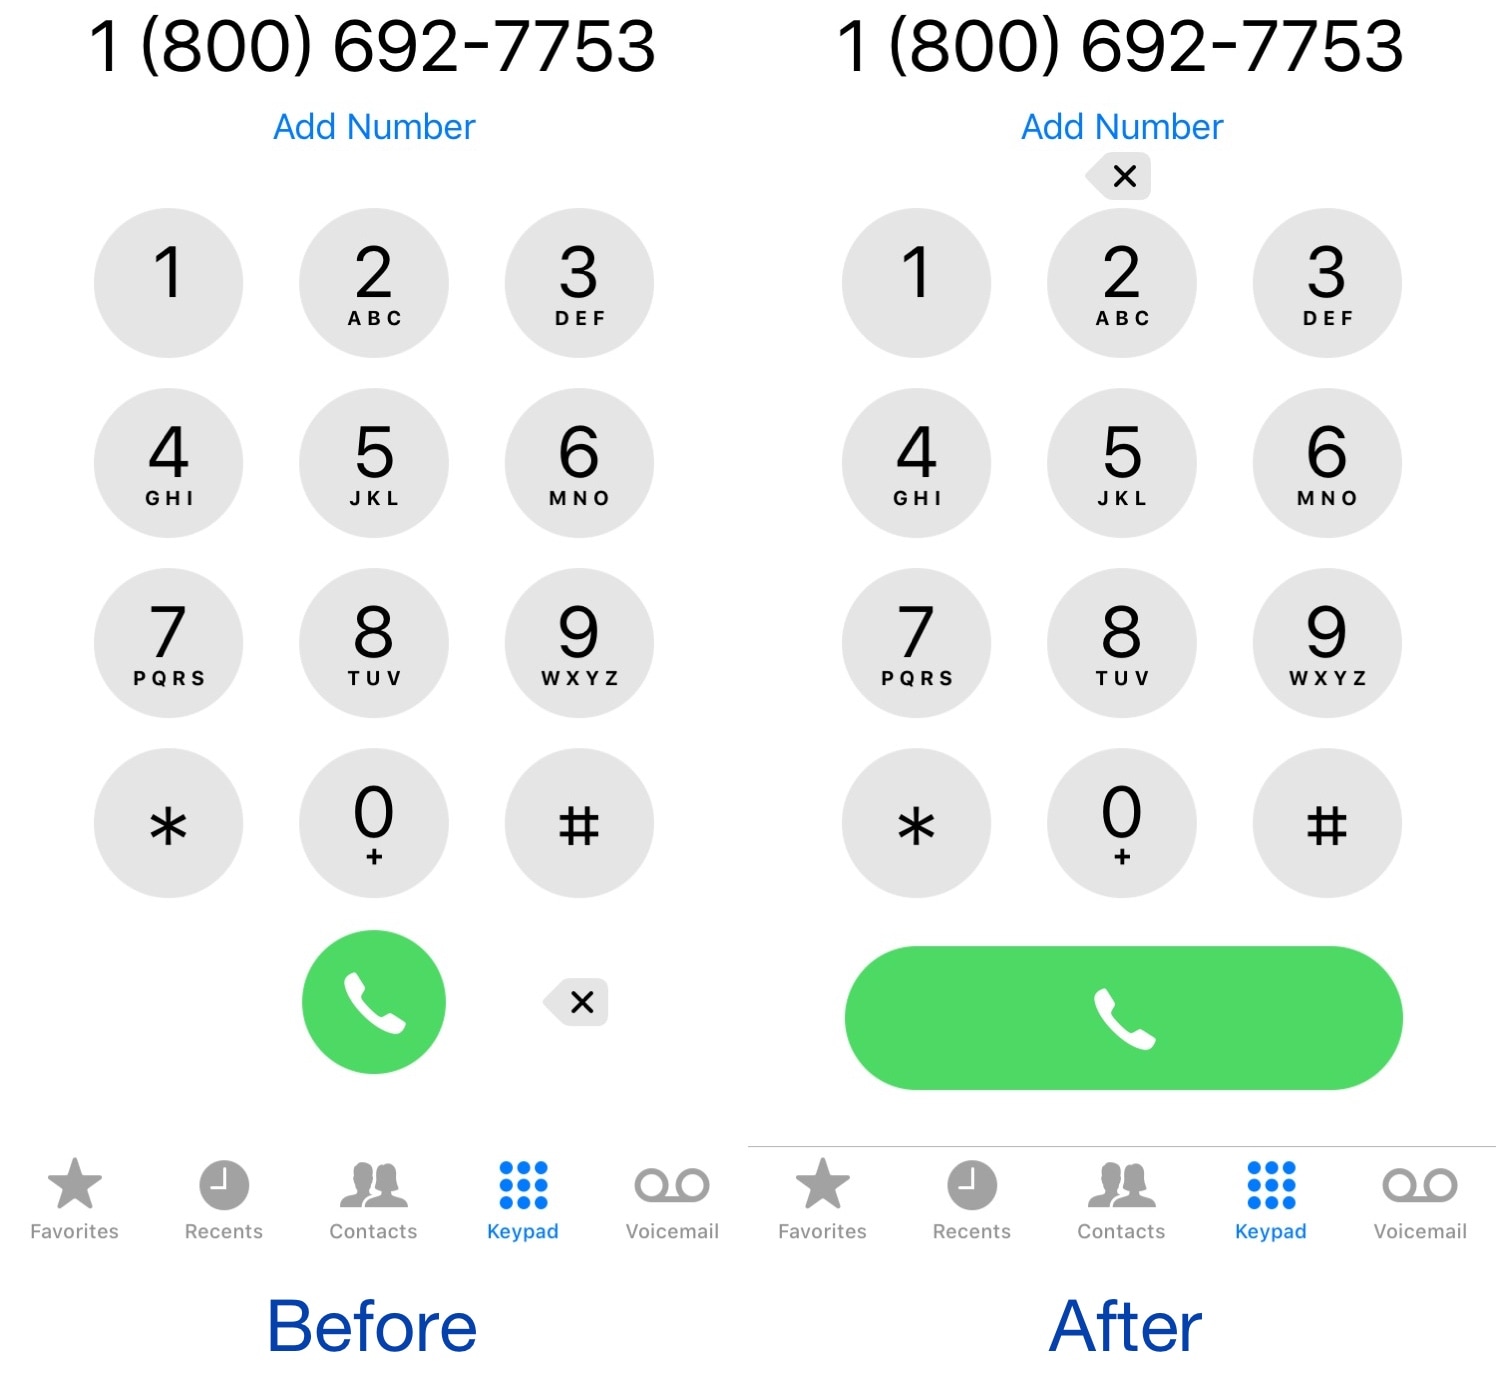 LongerCallButton membuat tombol panggilan aplikasi Telepon lebih luas dan lebih mudah untuk diketuk 2